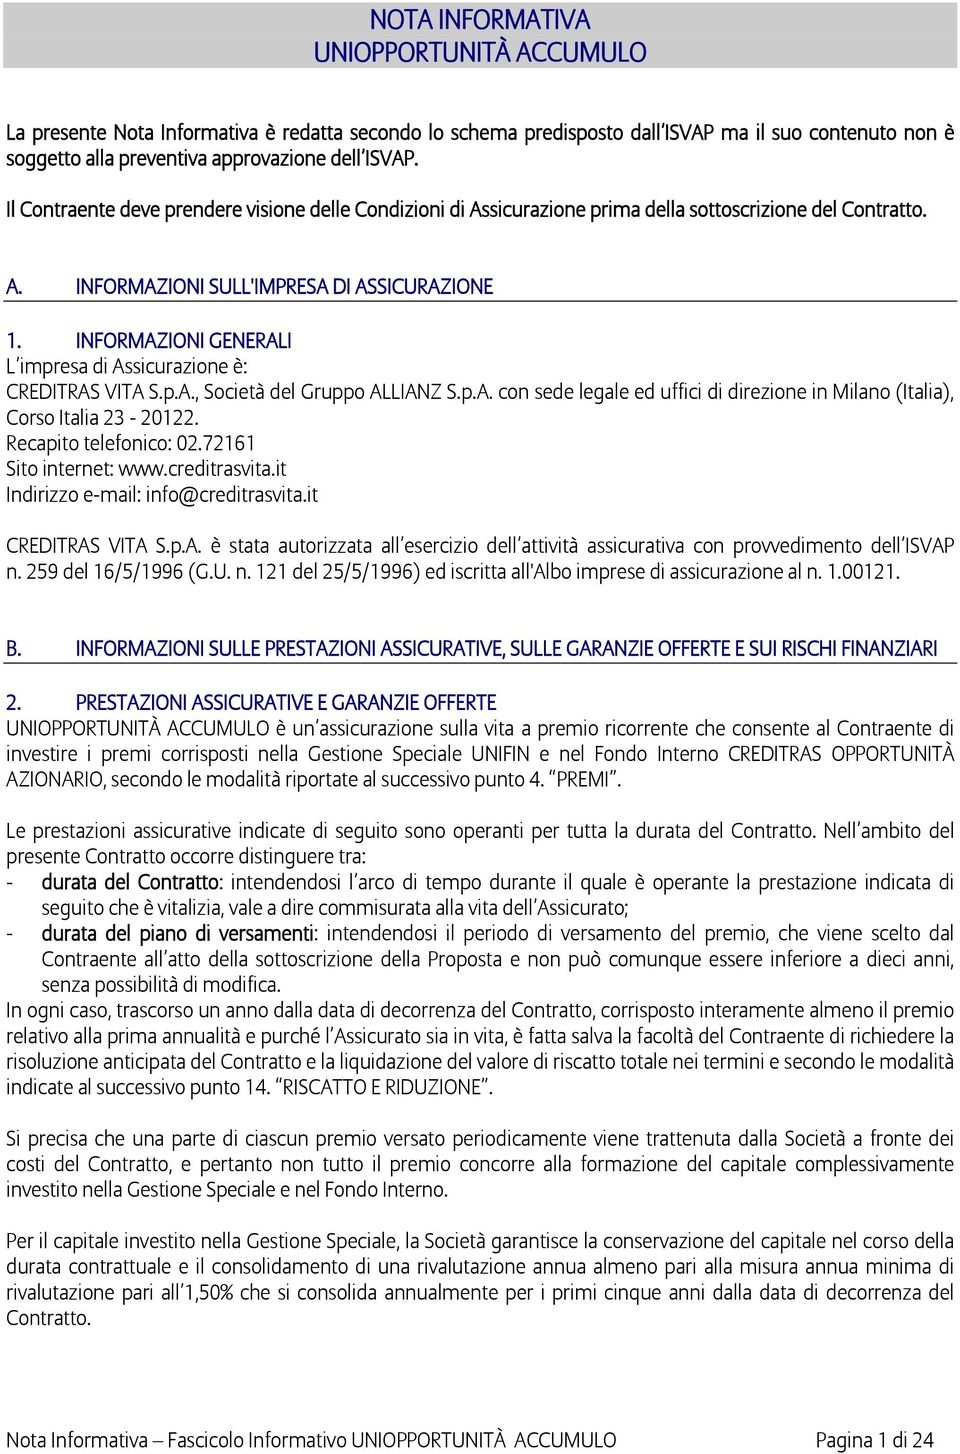 INFORMAZIONI GENERALI L impresa di Assicurazione è: CREDITRAS VITA S.p.A., Società del Gruppo ALLIANZ S.p.A. con sede legale ed uffici di direzione in Milano (Italia), Corso Italia 23-20122.